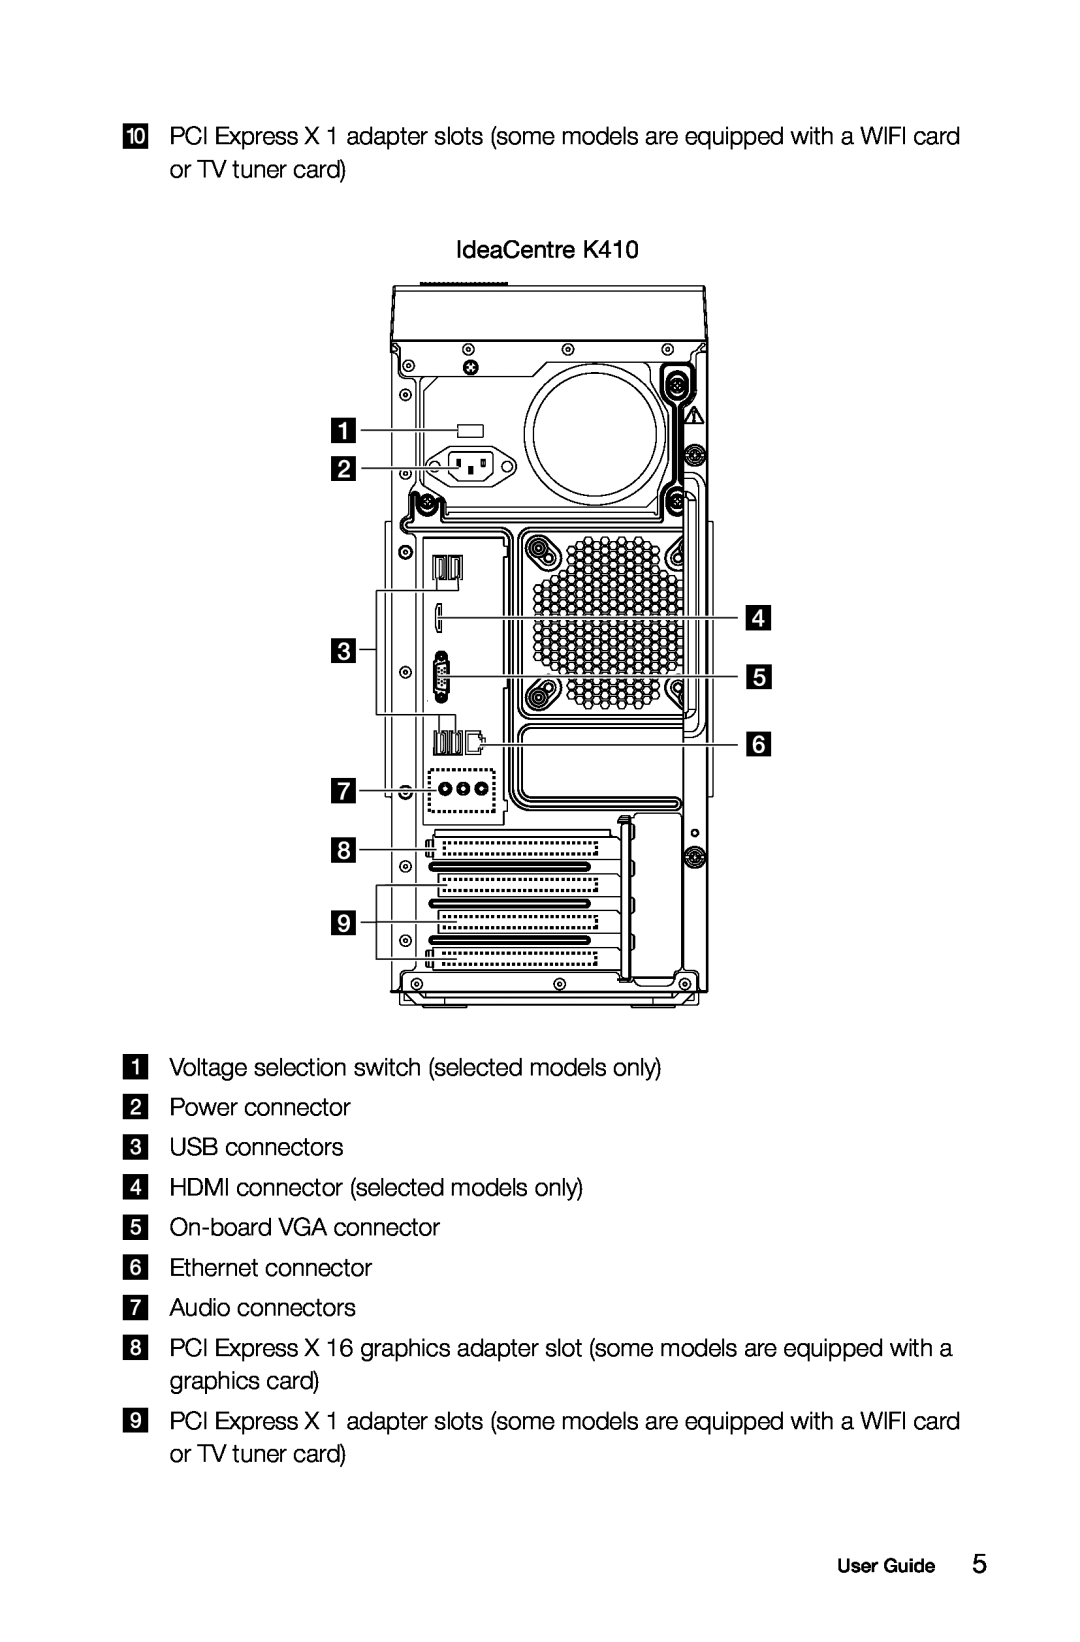 Lenovo 10121/90A1 [K450 ES], 10120/90A0 [K450 NON-ES], 10086/3109/4743 [K430], 10089/1168/4744 [K410] manual IdeaCentre K410 